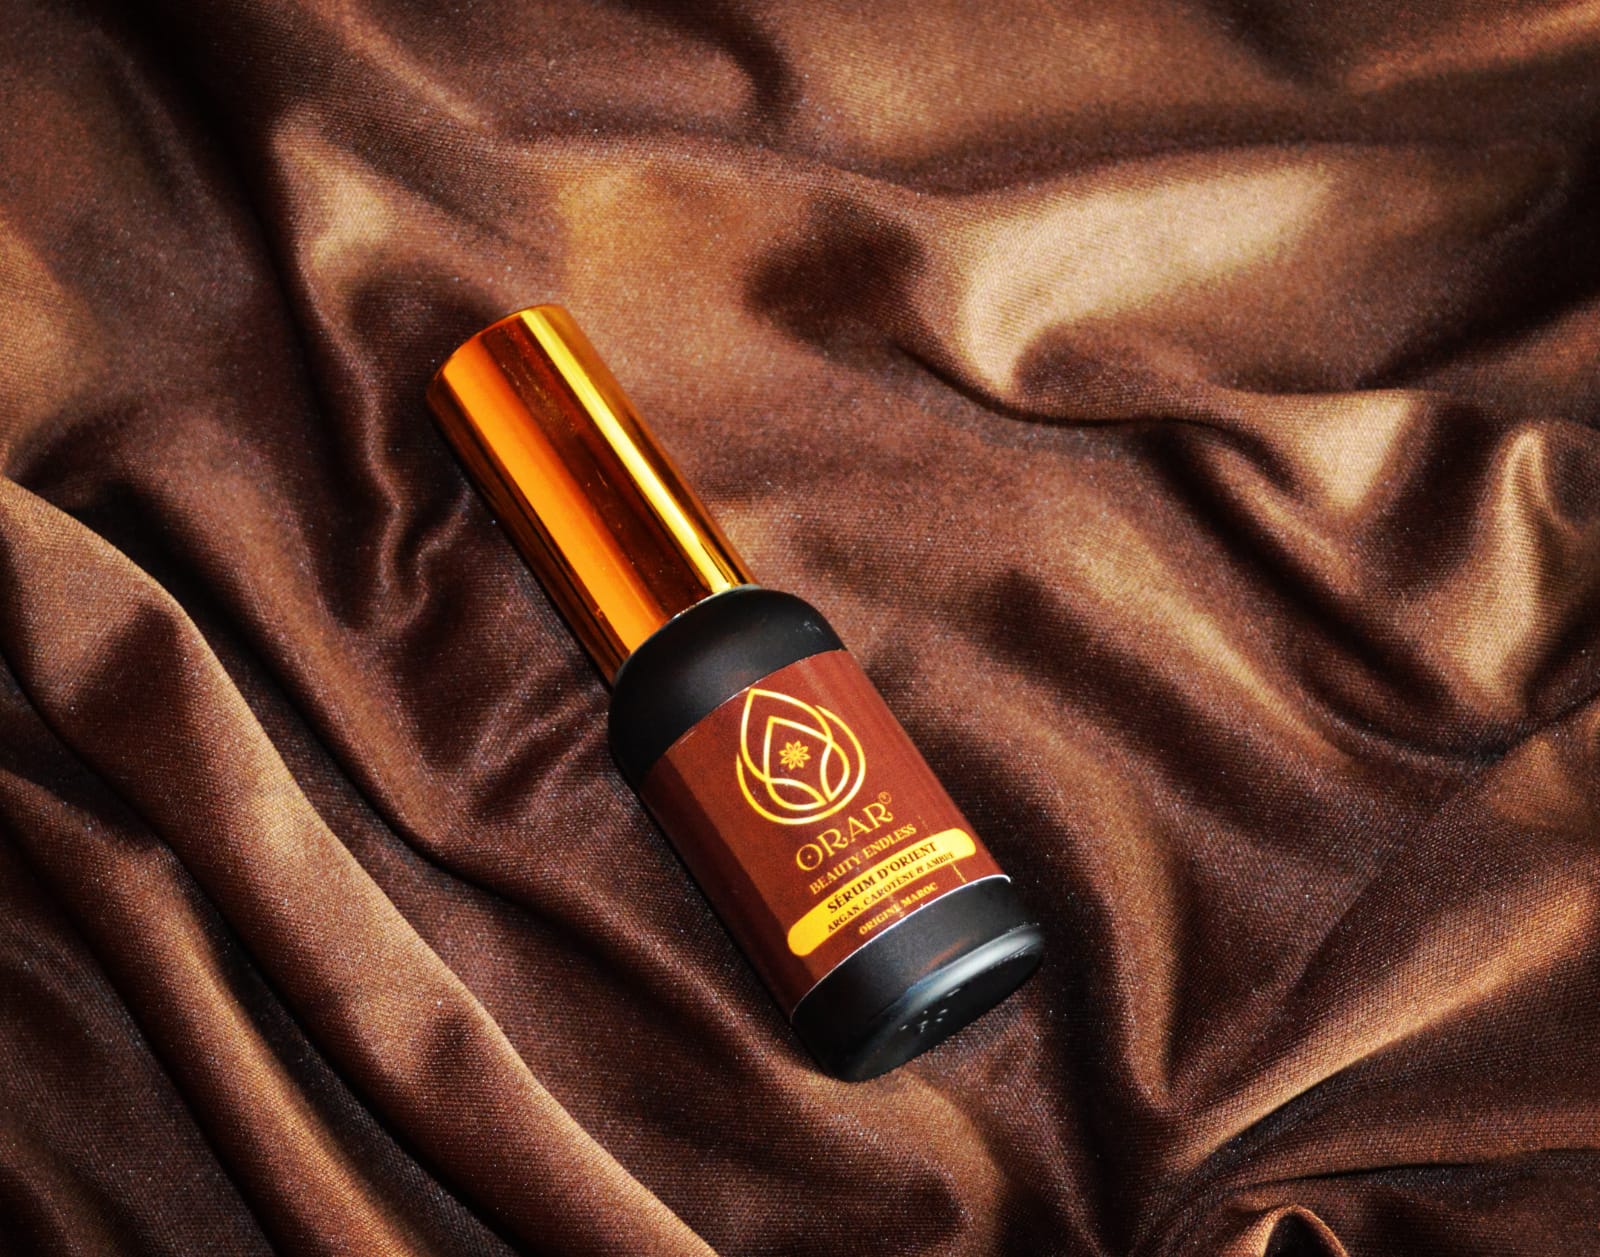 SOIN D'ORIENT - Magnifique Sérum cheveux 30ml - huile d'argan, beta carotène, ambre (cheveux et barbe)